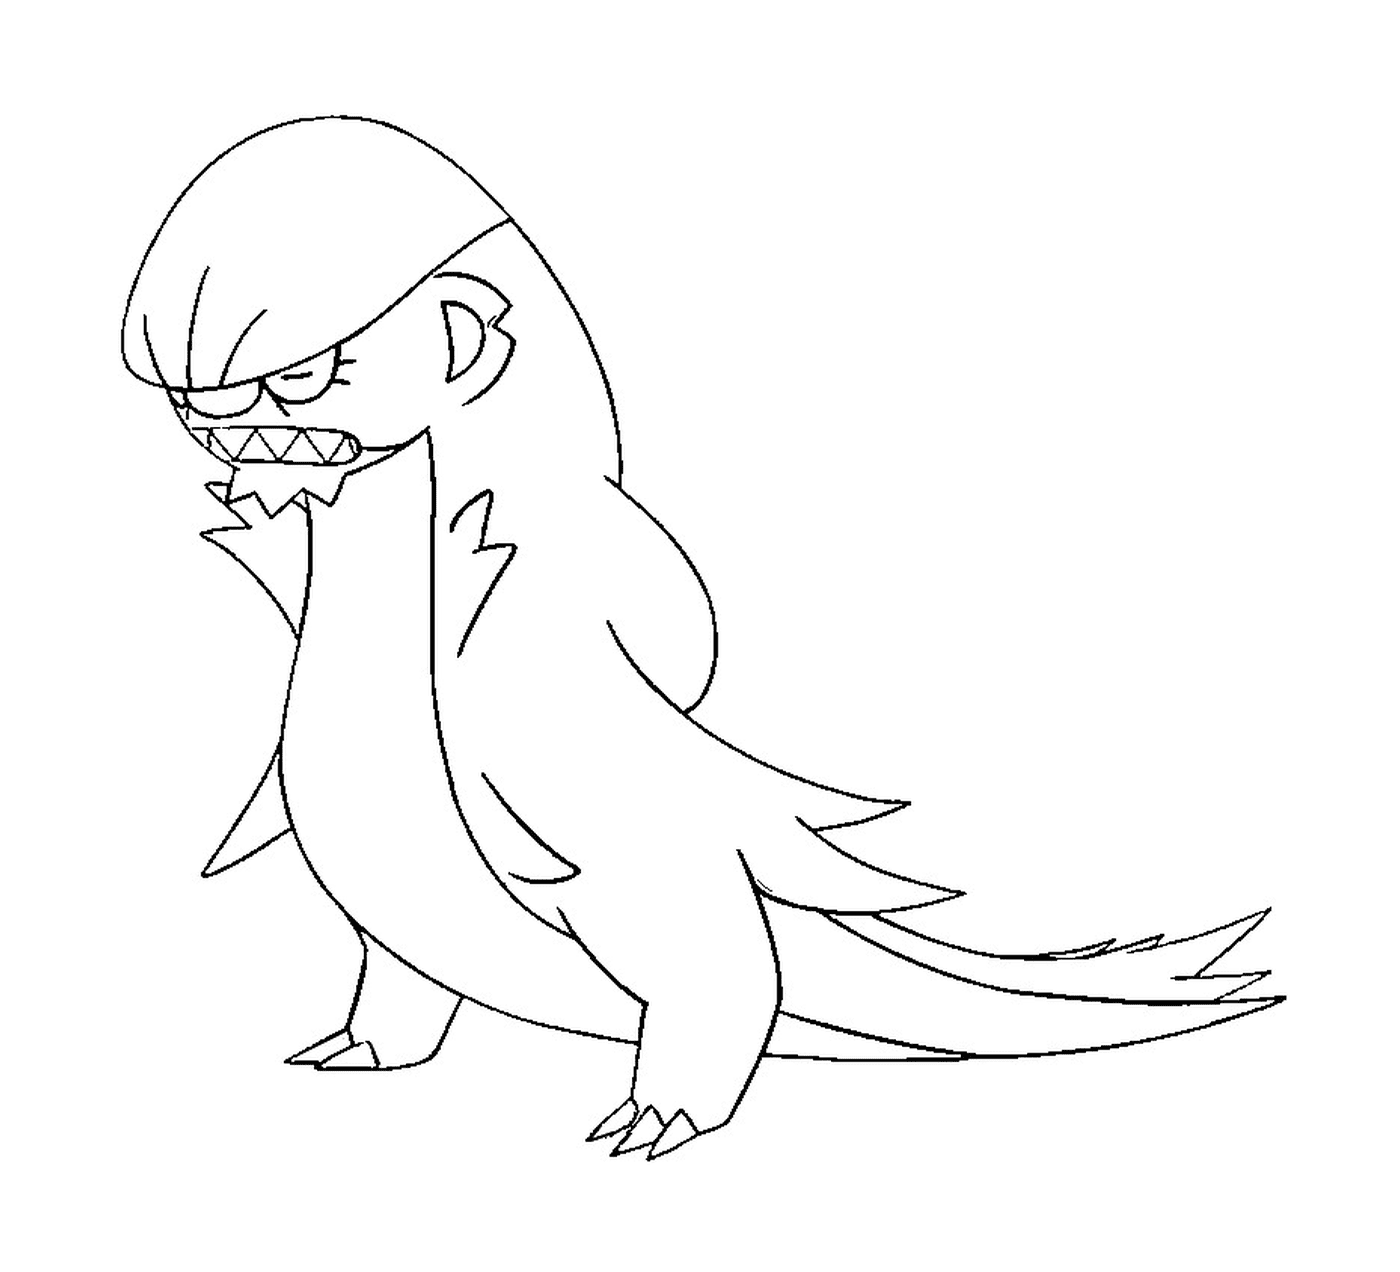  Argous, a bird with an angry air 